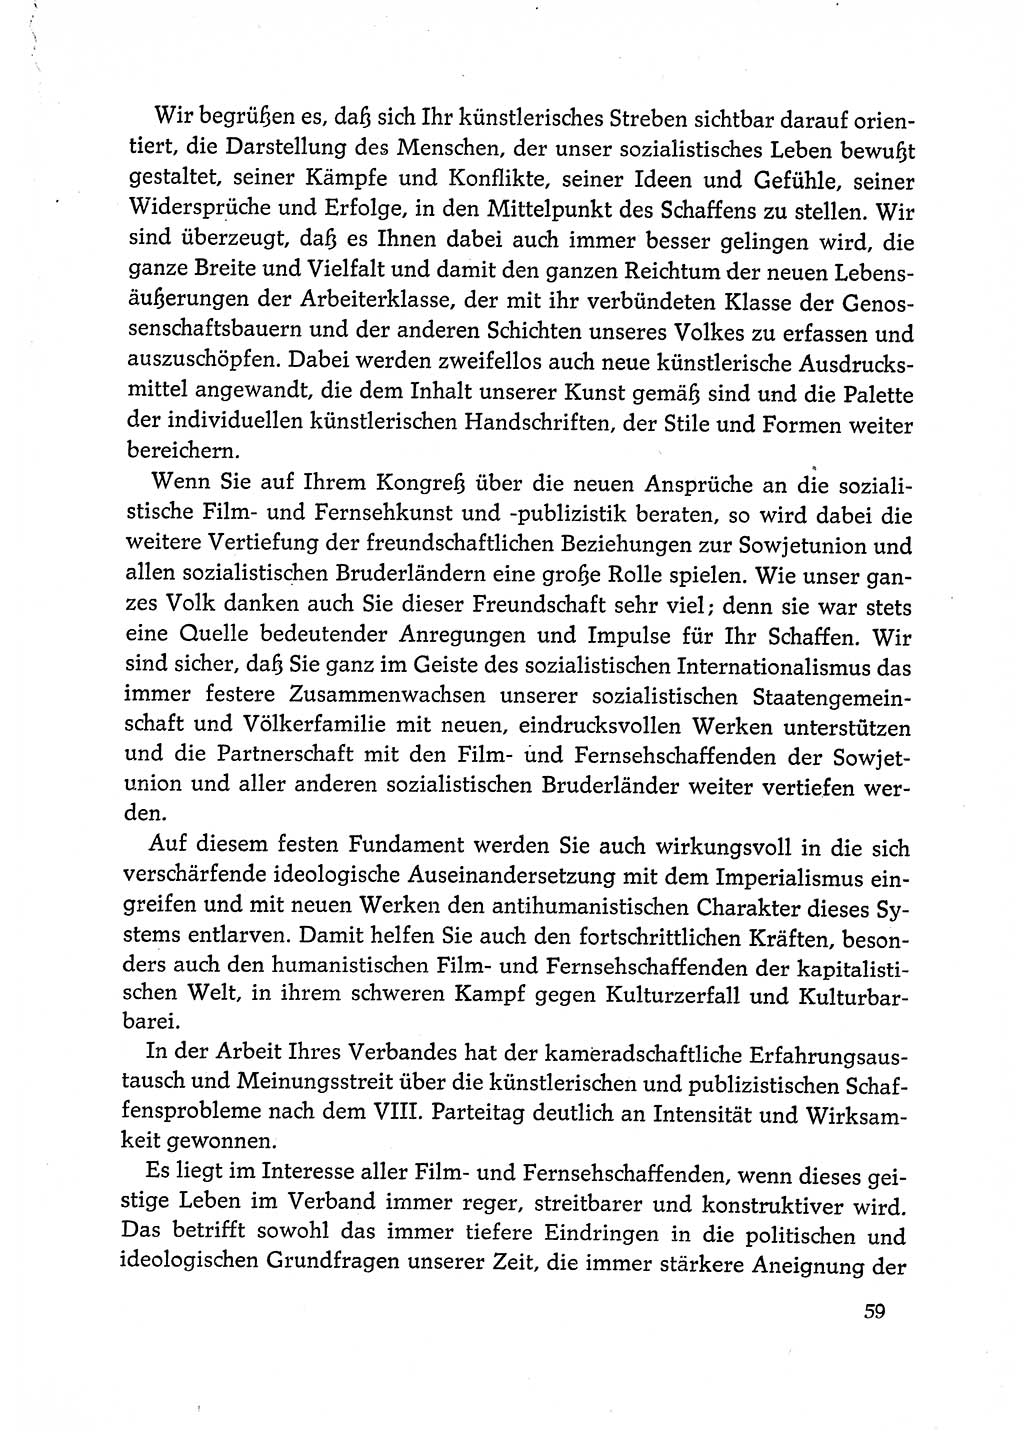 Dokumente der Sozialistischen Einheitspartei Deutschlands (SED) [Deutsche Demokratische Republik (DDR)] 1972-1973, Seite 59 (Dok. SED DDR 1972-1973, S. 59)